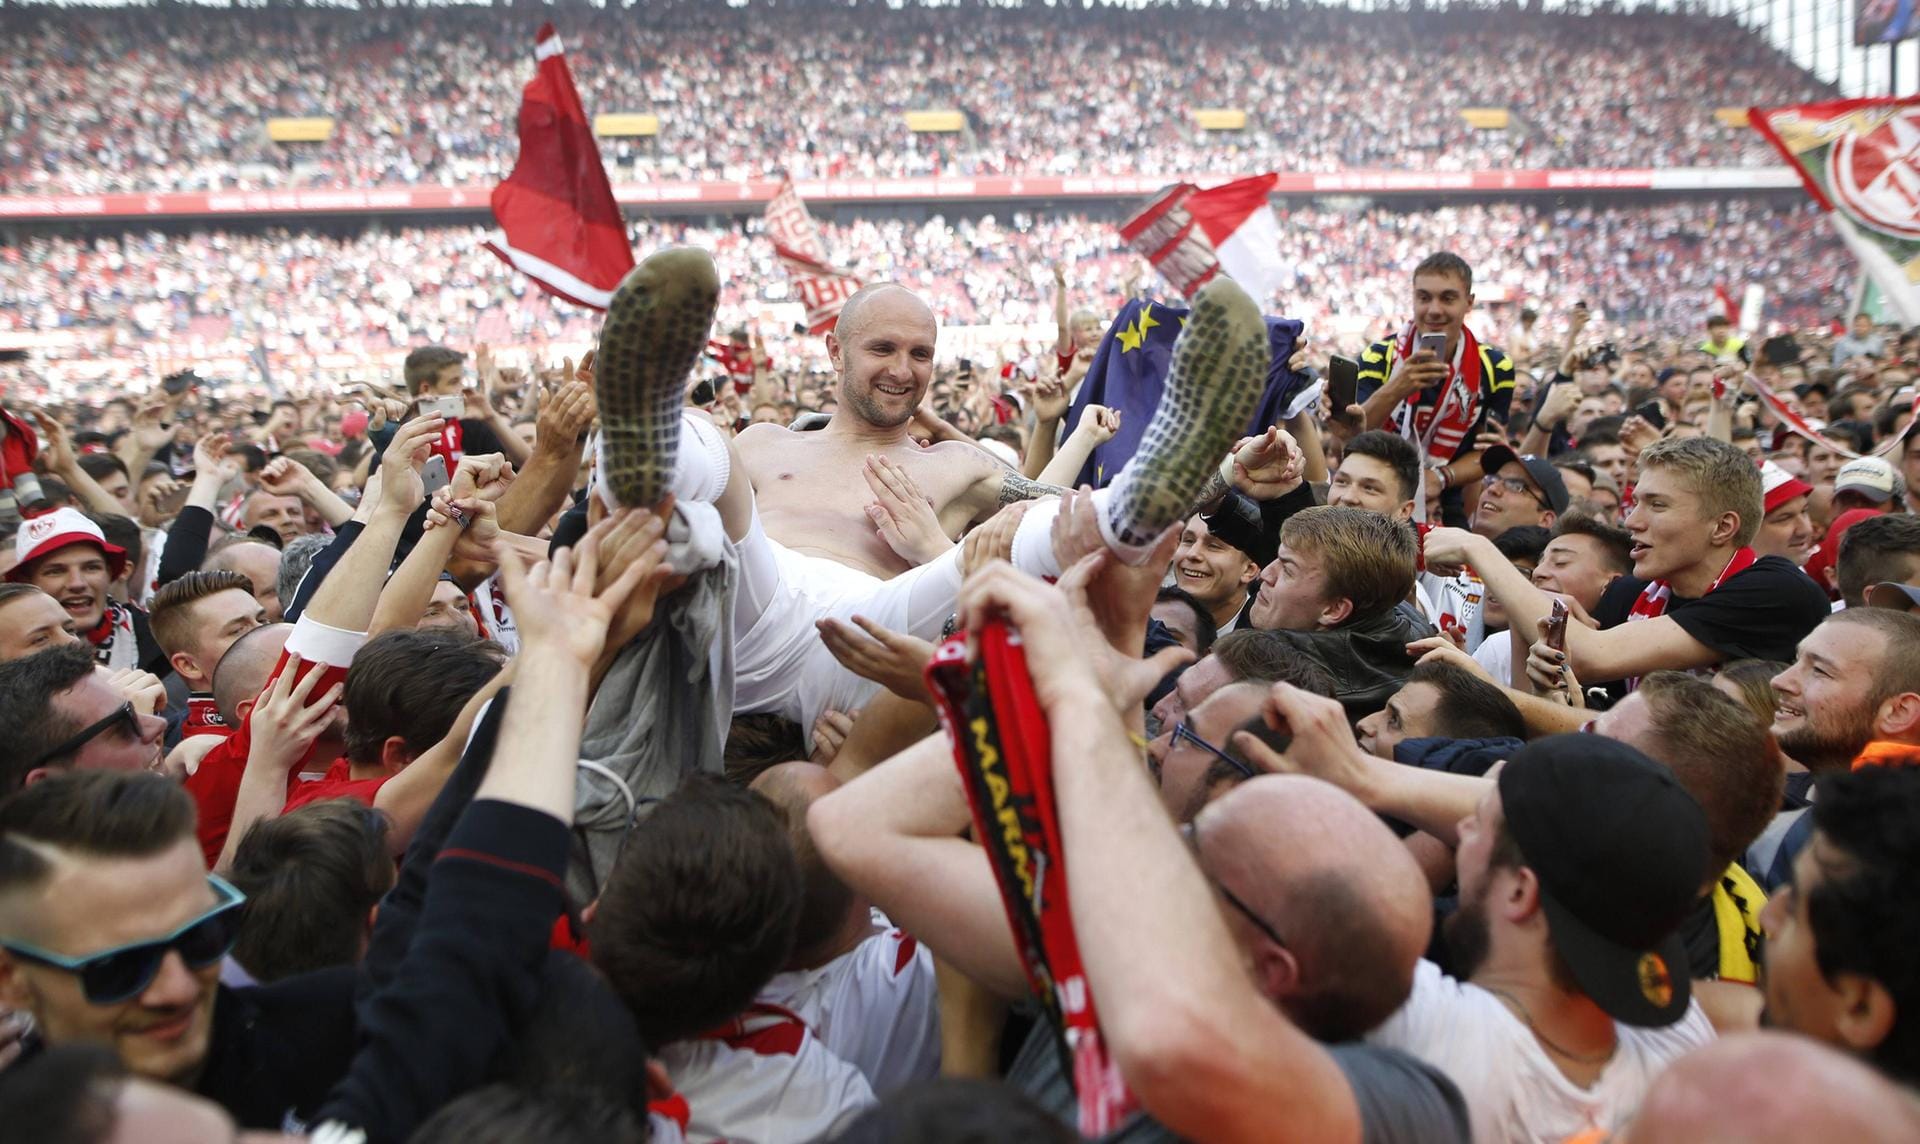 Nach 25 Jahren ohne internationalen Wettbewerb ist bei den Köln-Fans Jubel-Stimmung pur angesagt. Hier wird Konstantin Rausch von den Anhängern gefeiert.